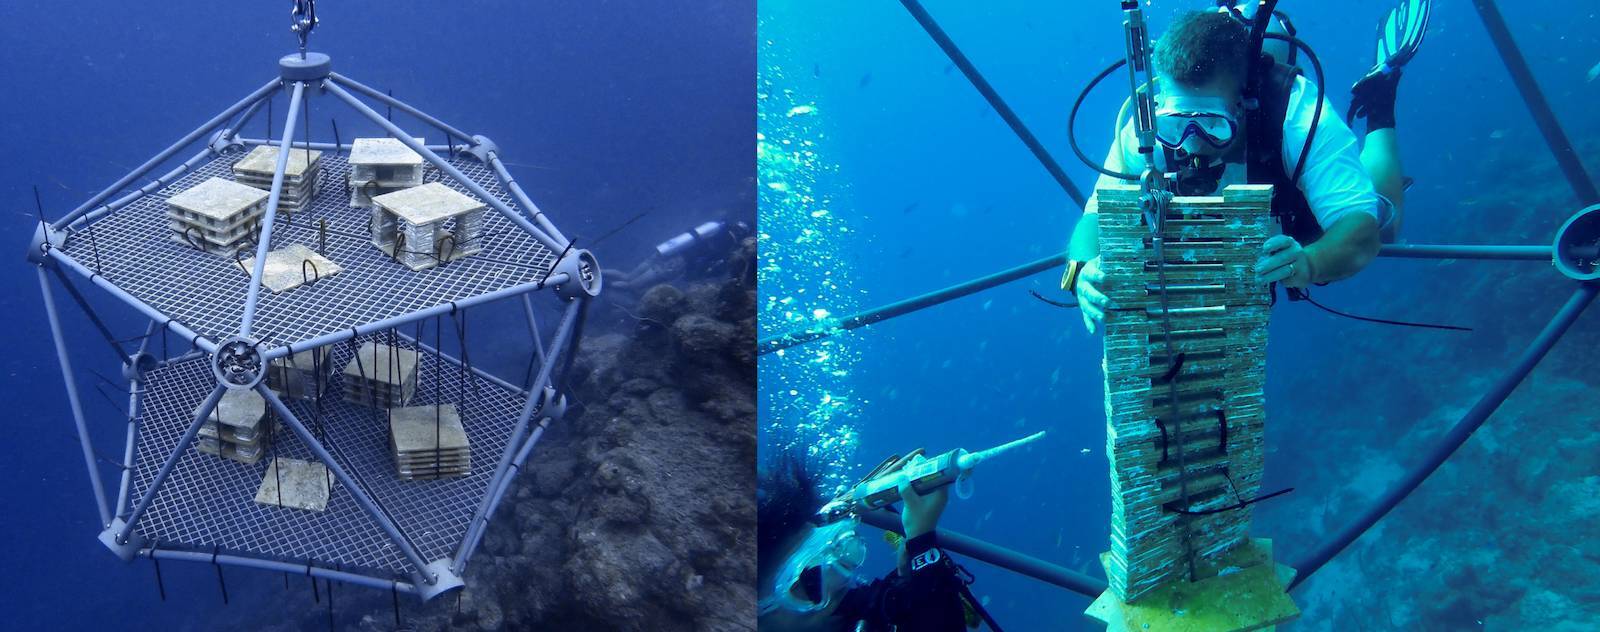 Nortek instruments under water with divers